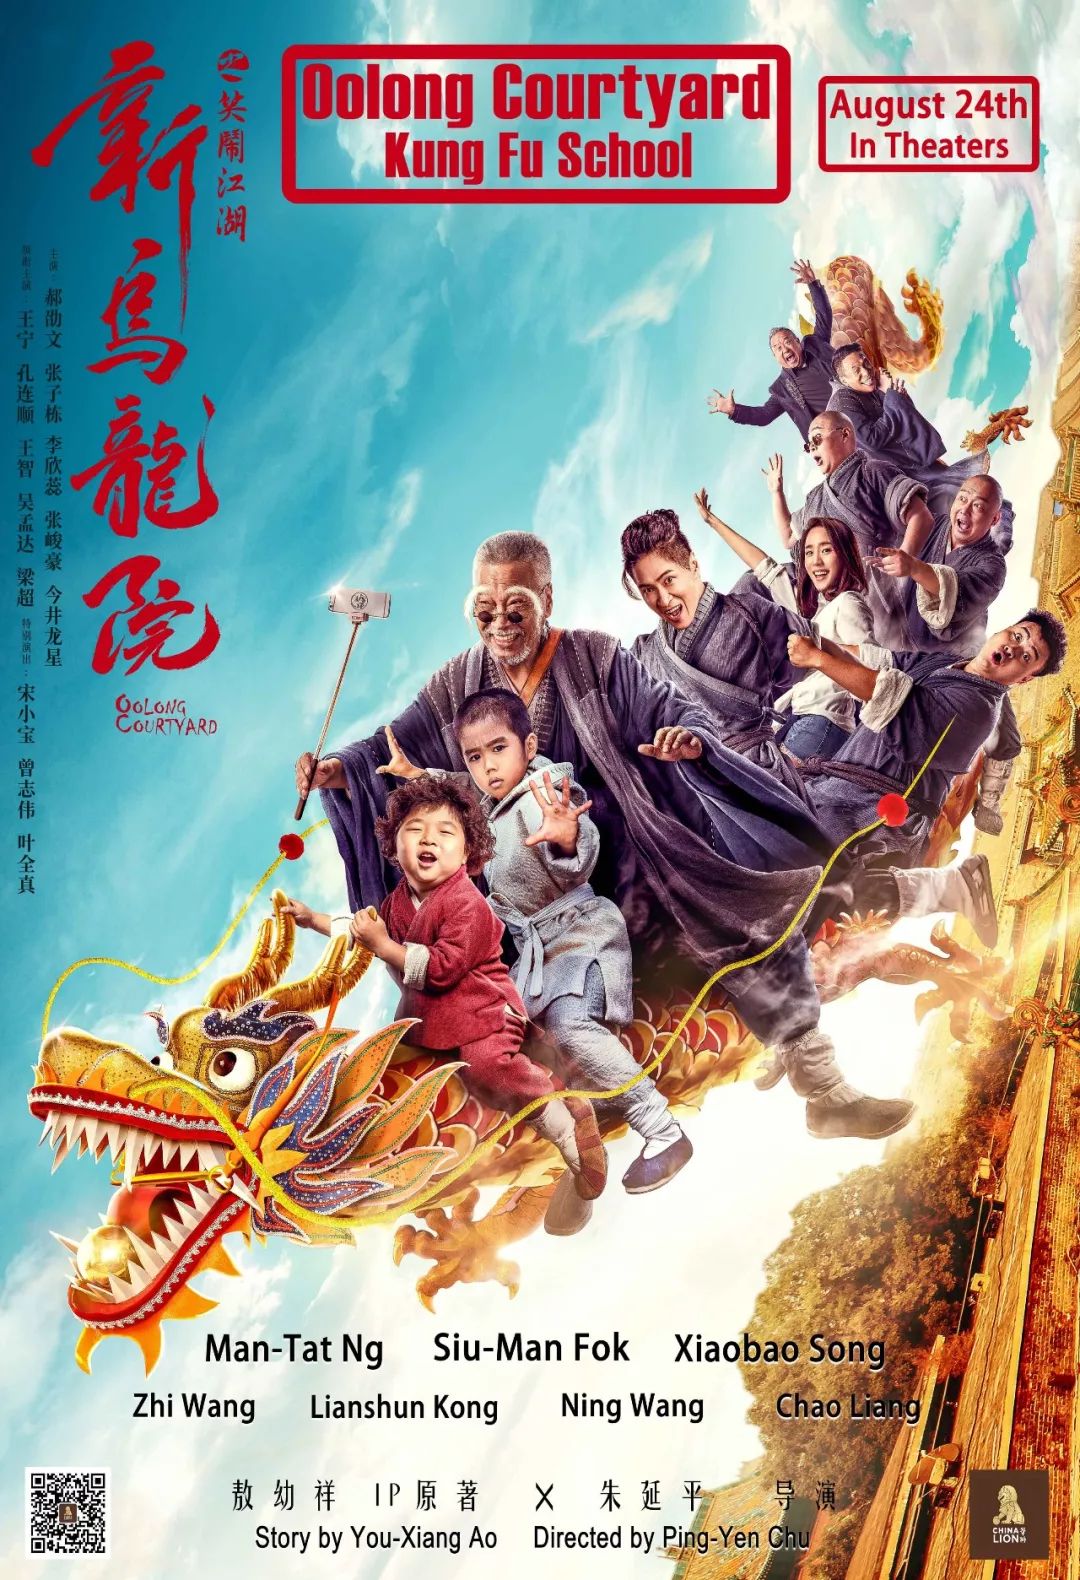 Poster Phim Tân Ô Long Viện: Tiếu Ngạo Giang Hồ (Oolong Courtyard)